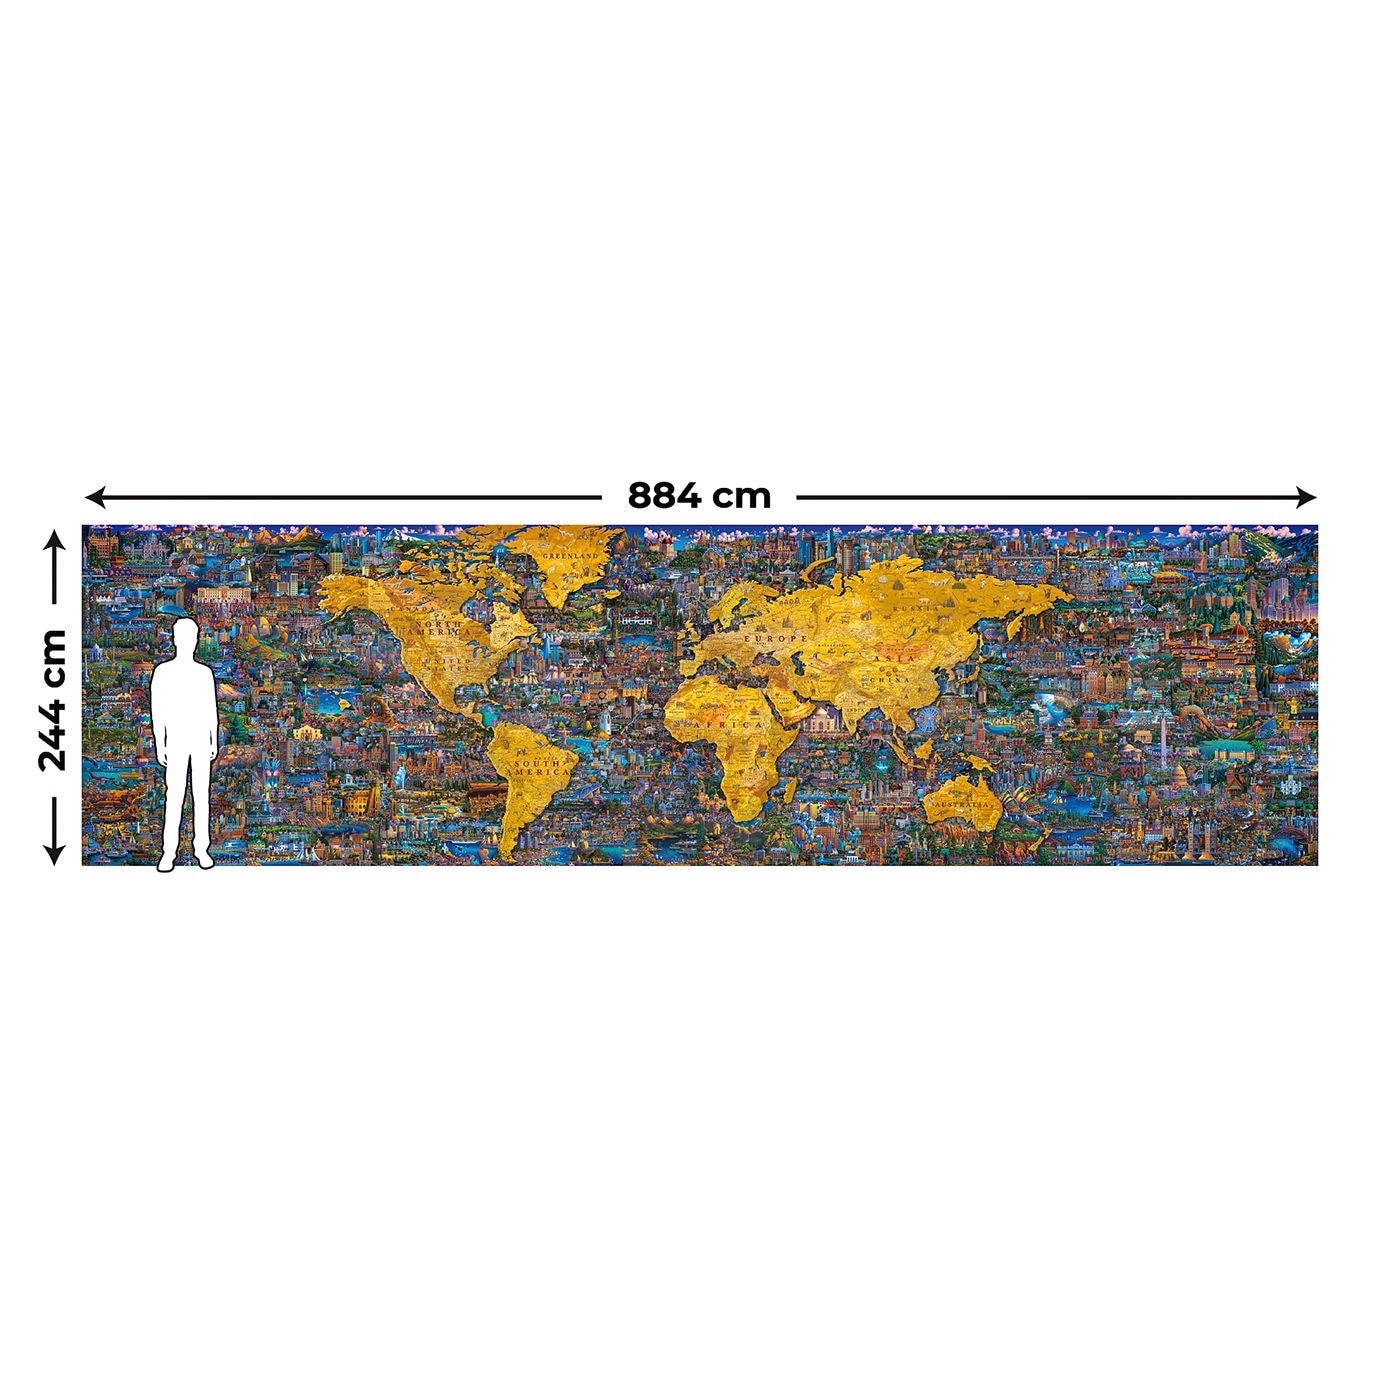 Dowdle 世界拼圖 60000片完成後尺寸約長244公分、寬884公分.和家人、朋友一起挑戰完成這幅拼圖作品